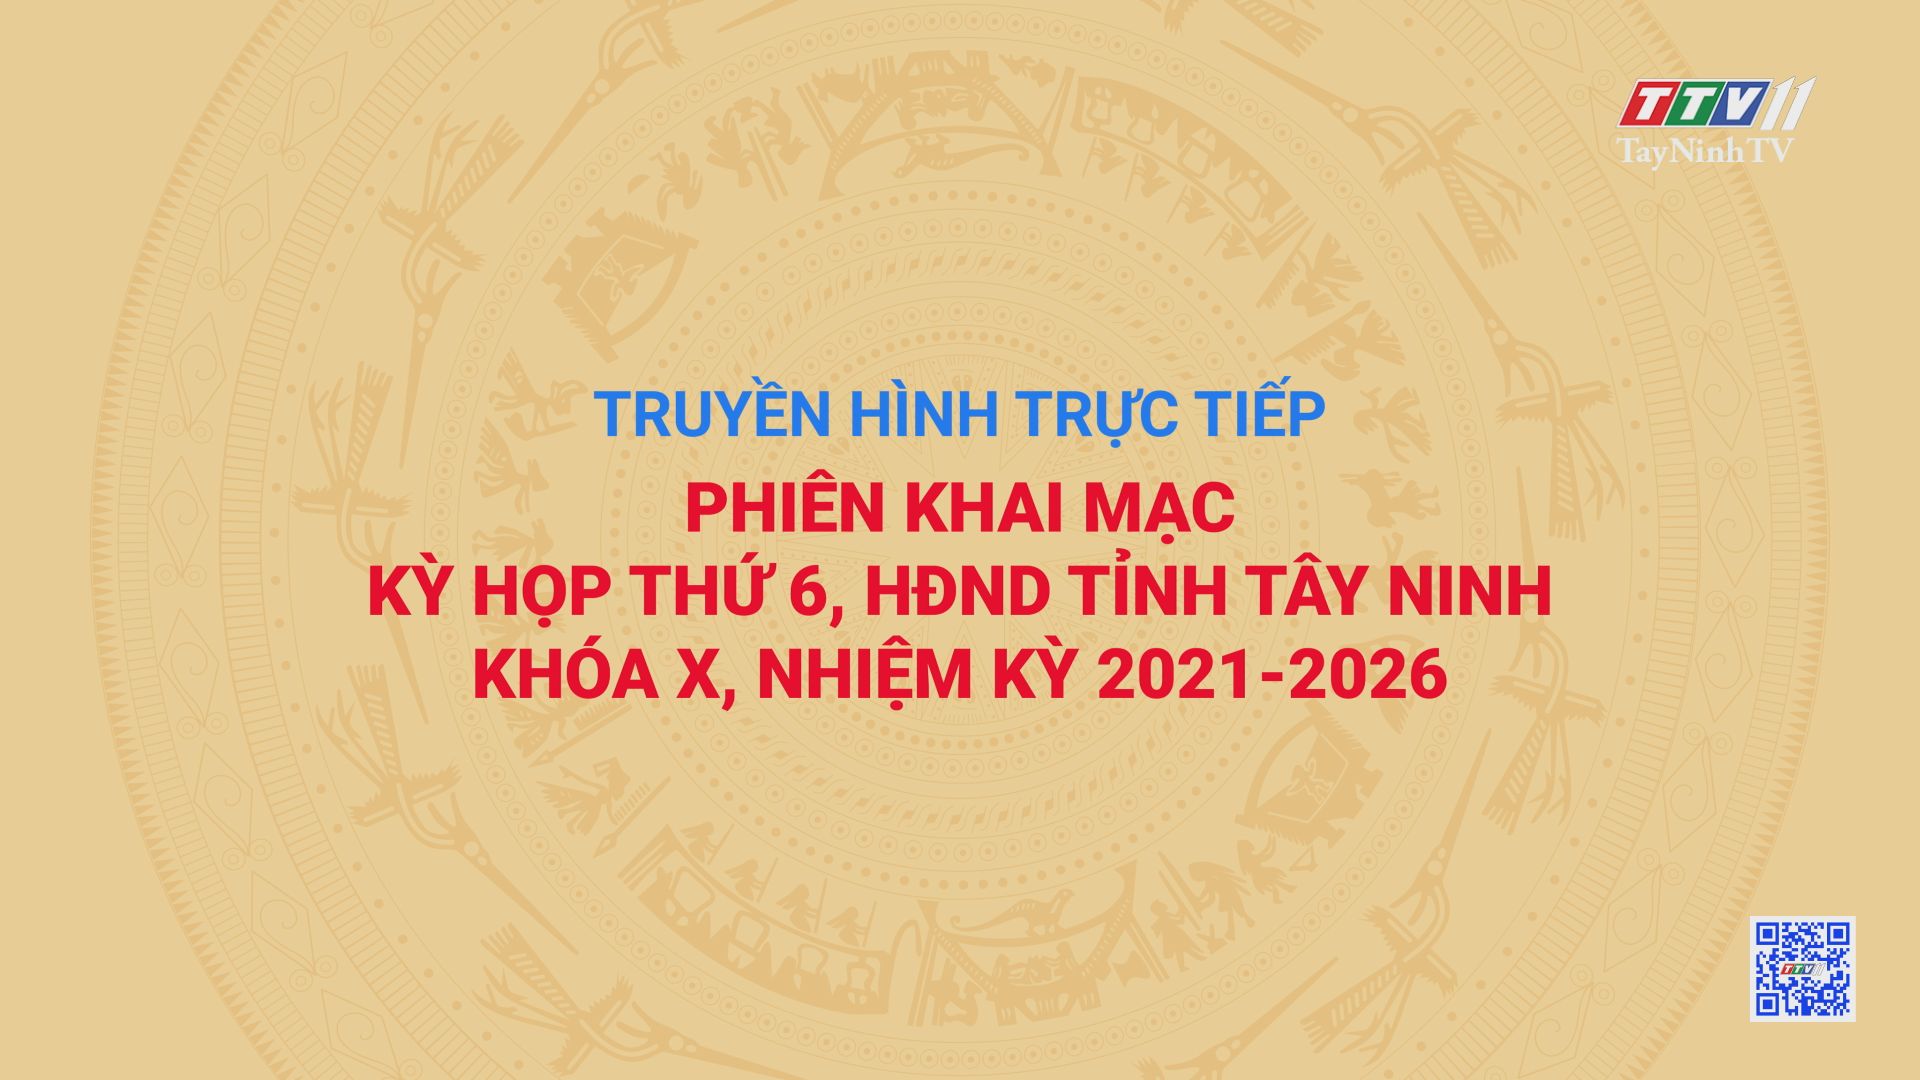 TRỰC TIẾP - PHIÊN KHAI MẠC KỲ HỌP THỨ 6, HĐND TỈNH TÂY NINH KHÓA X, NHIỆM KỲ 2021-2026 | TayNinhTV